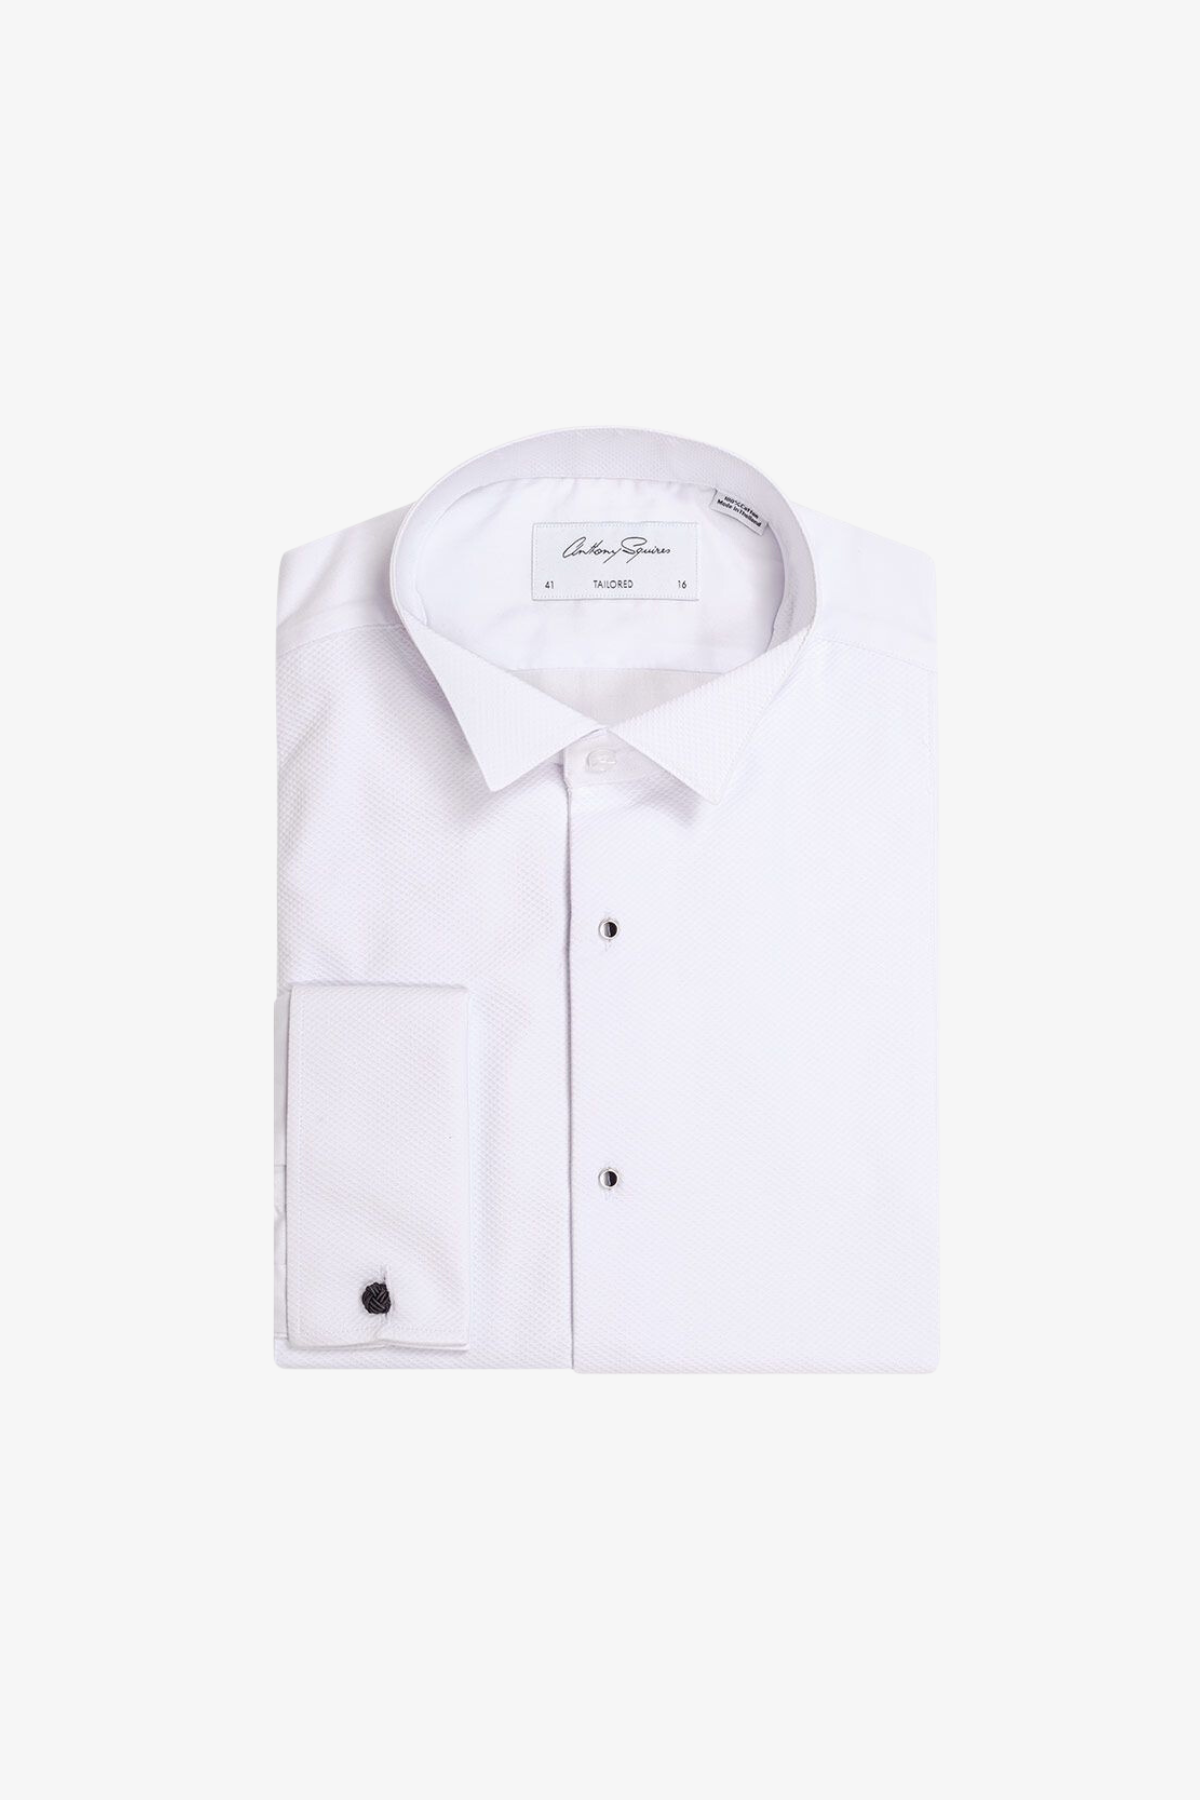 Ralph - White Dress Shirt